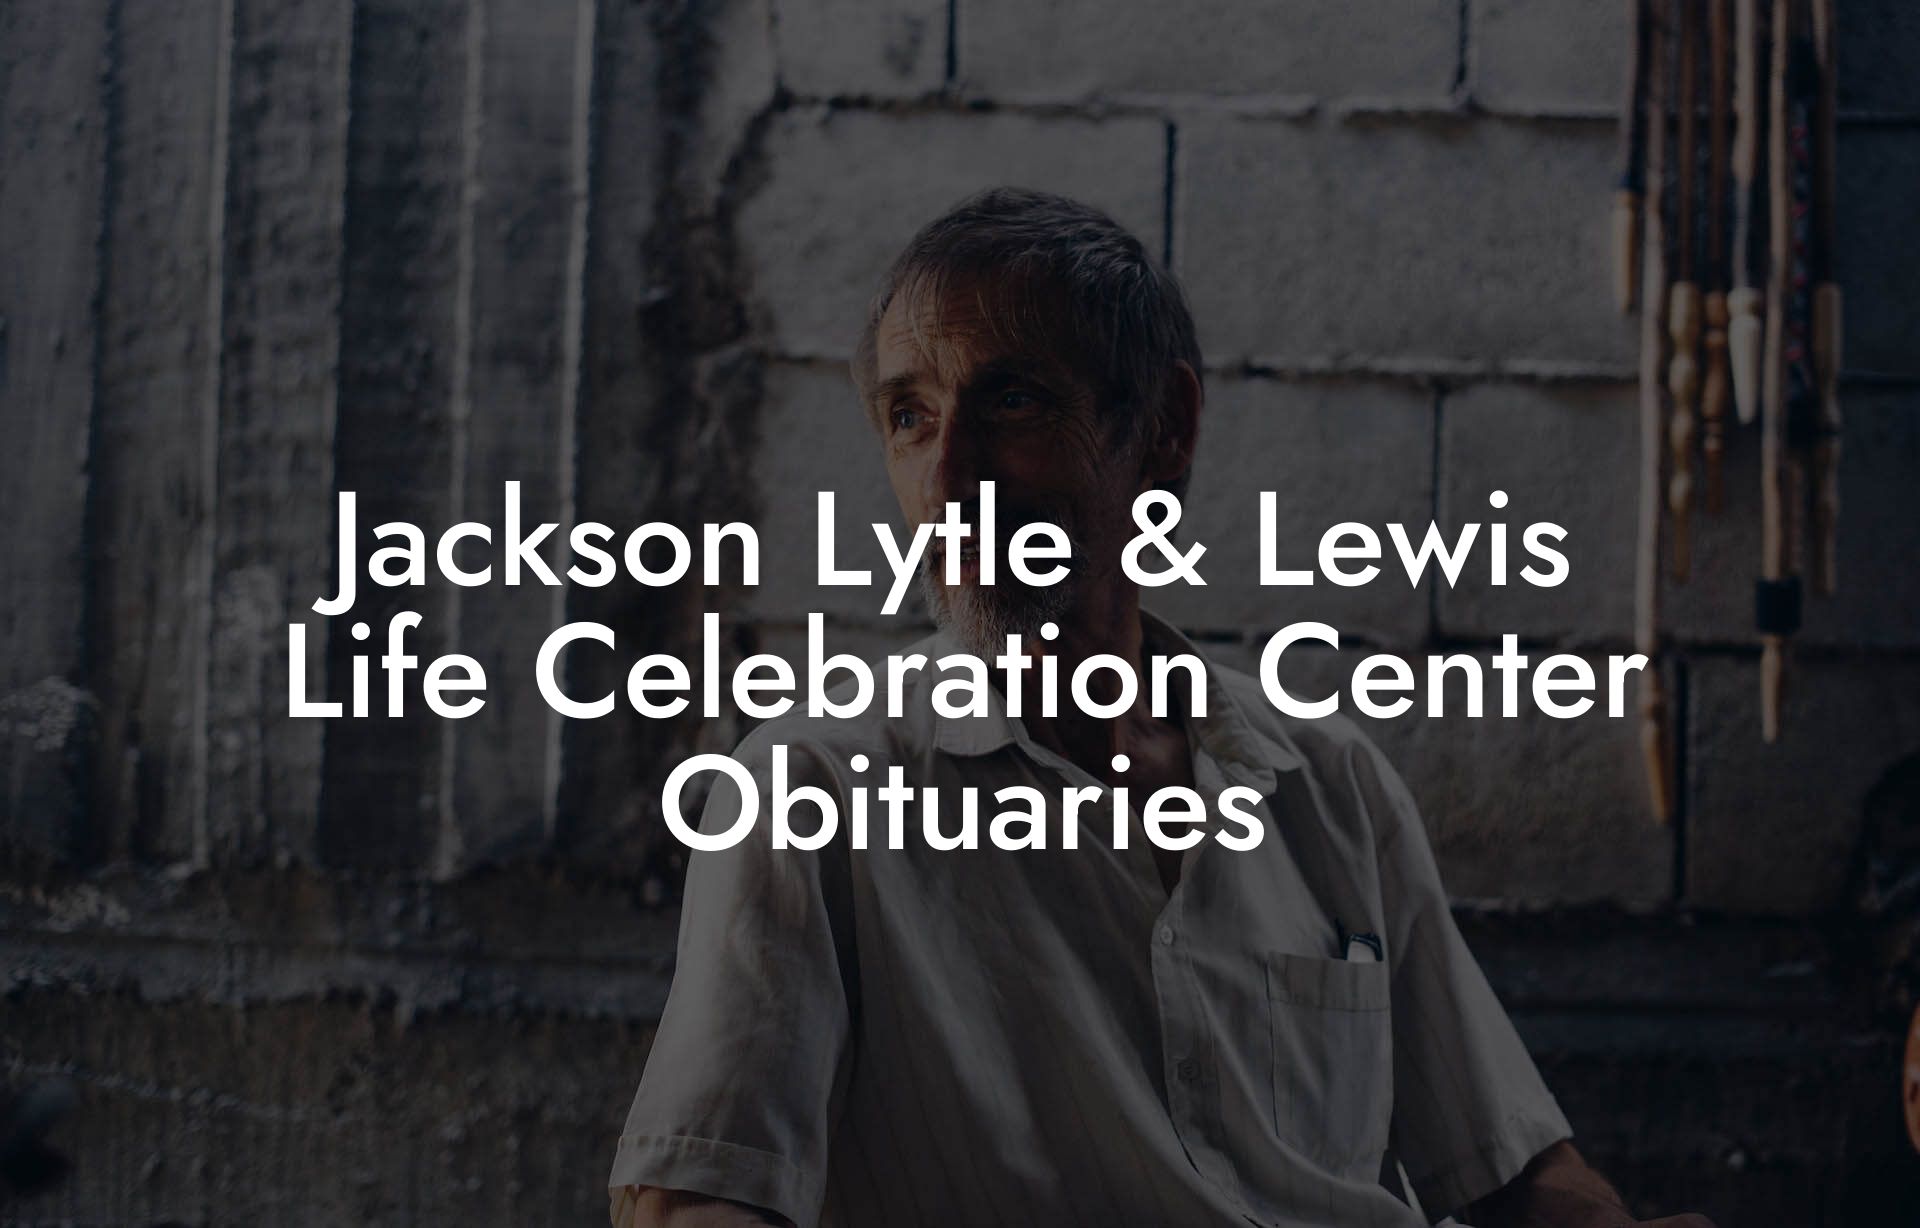 Jackson Lytle & Lewis Life Celebration Center Obituaries